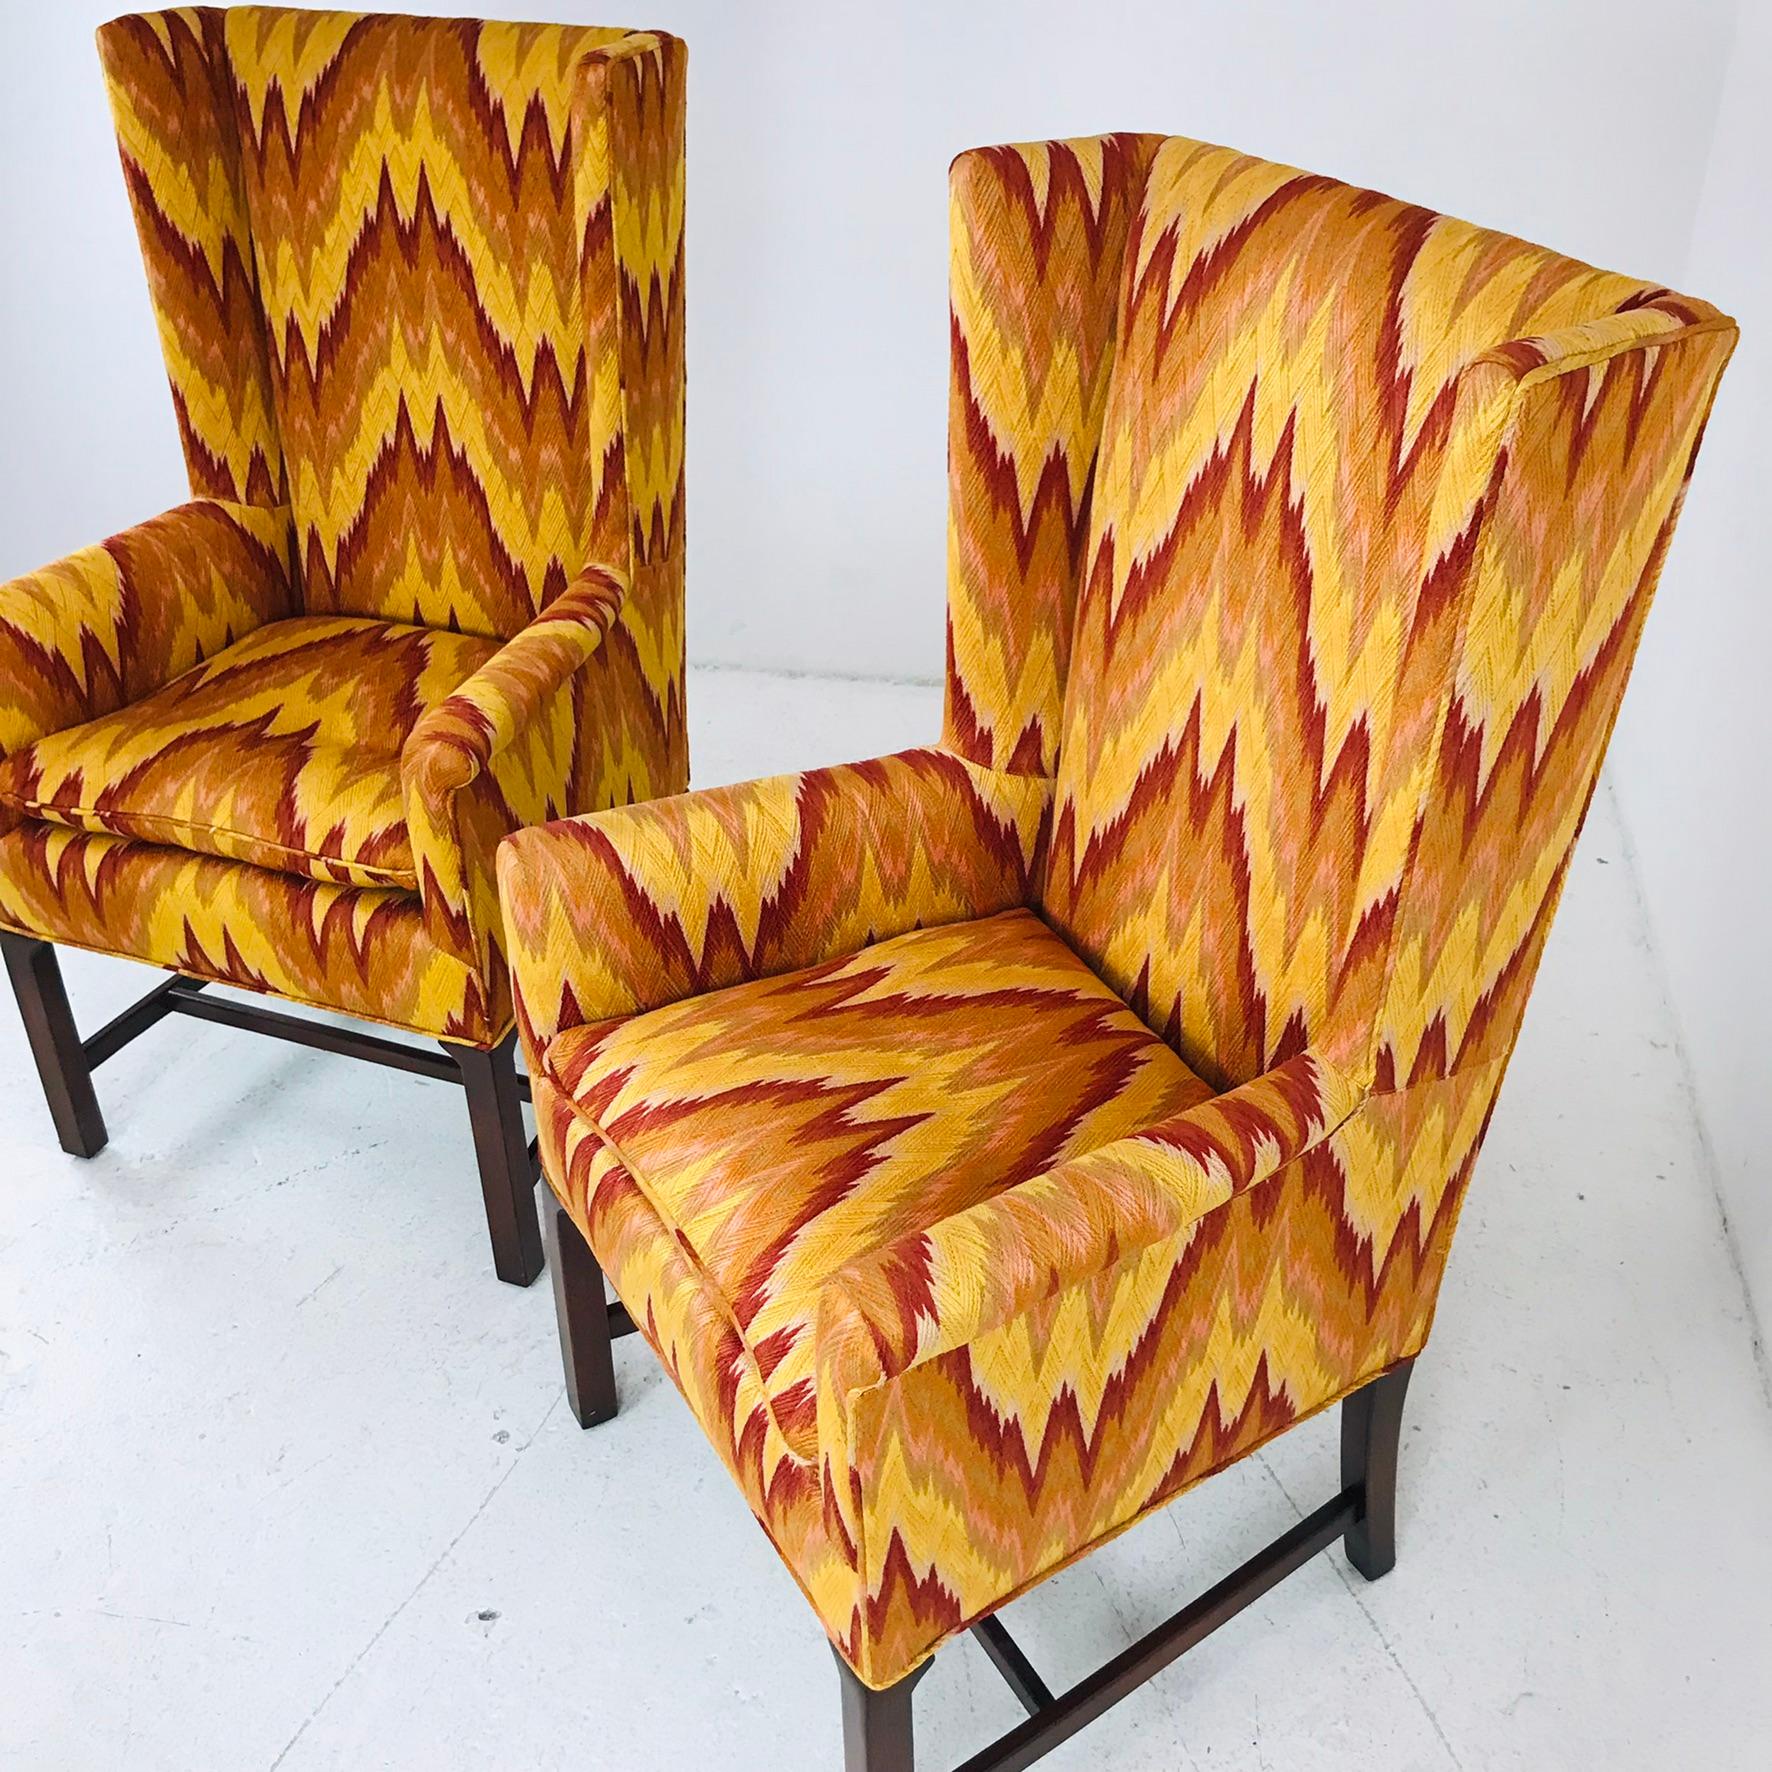 stitch chairs